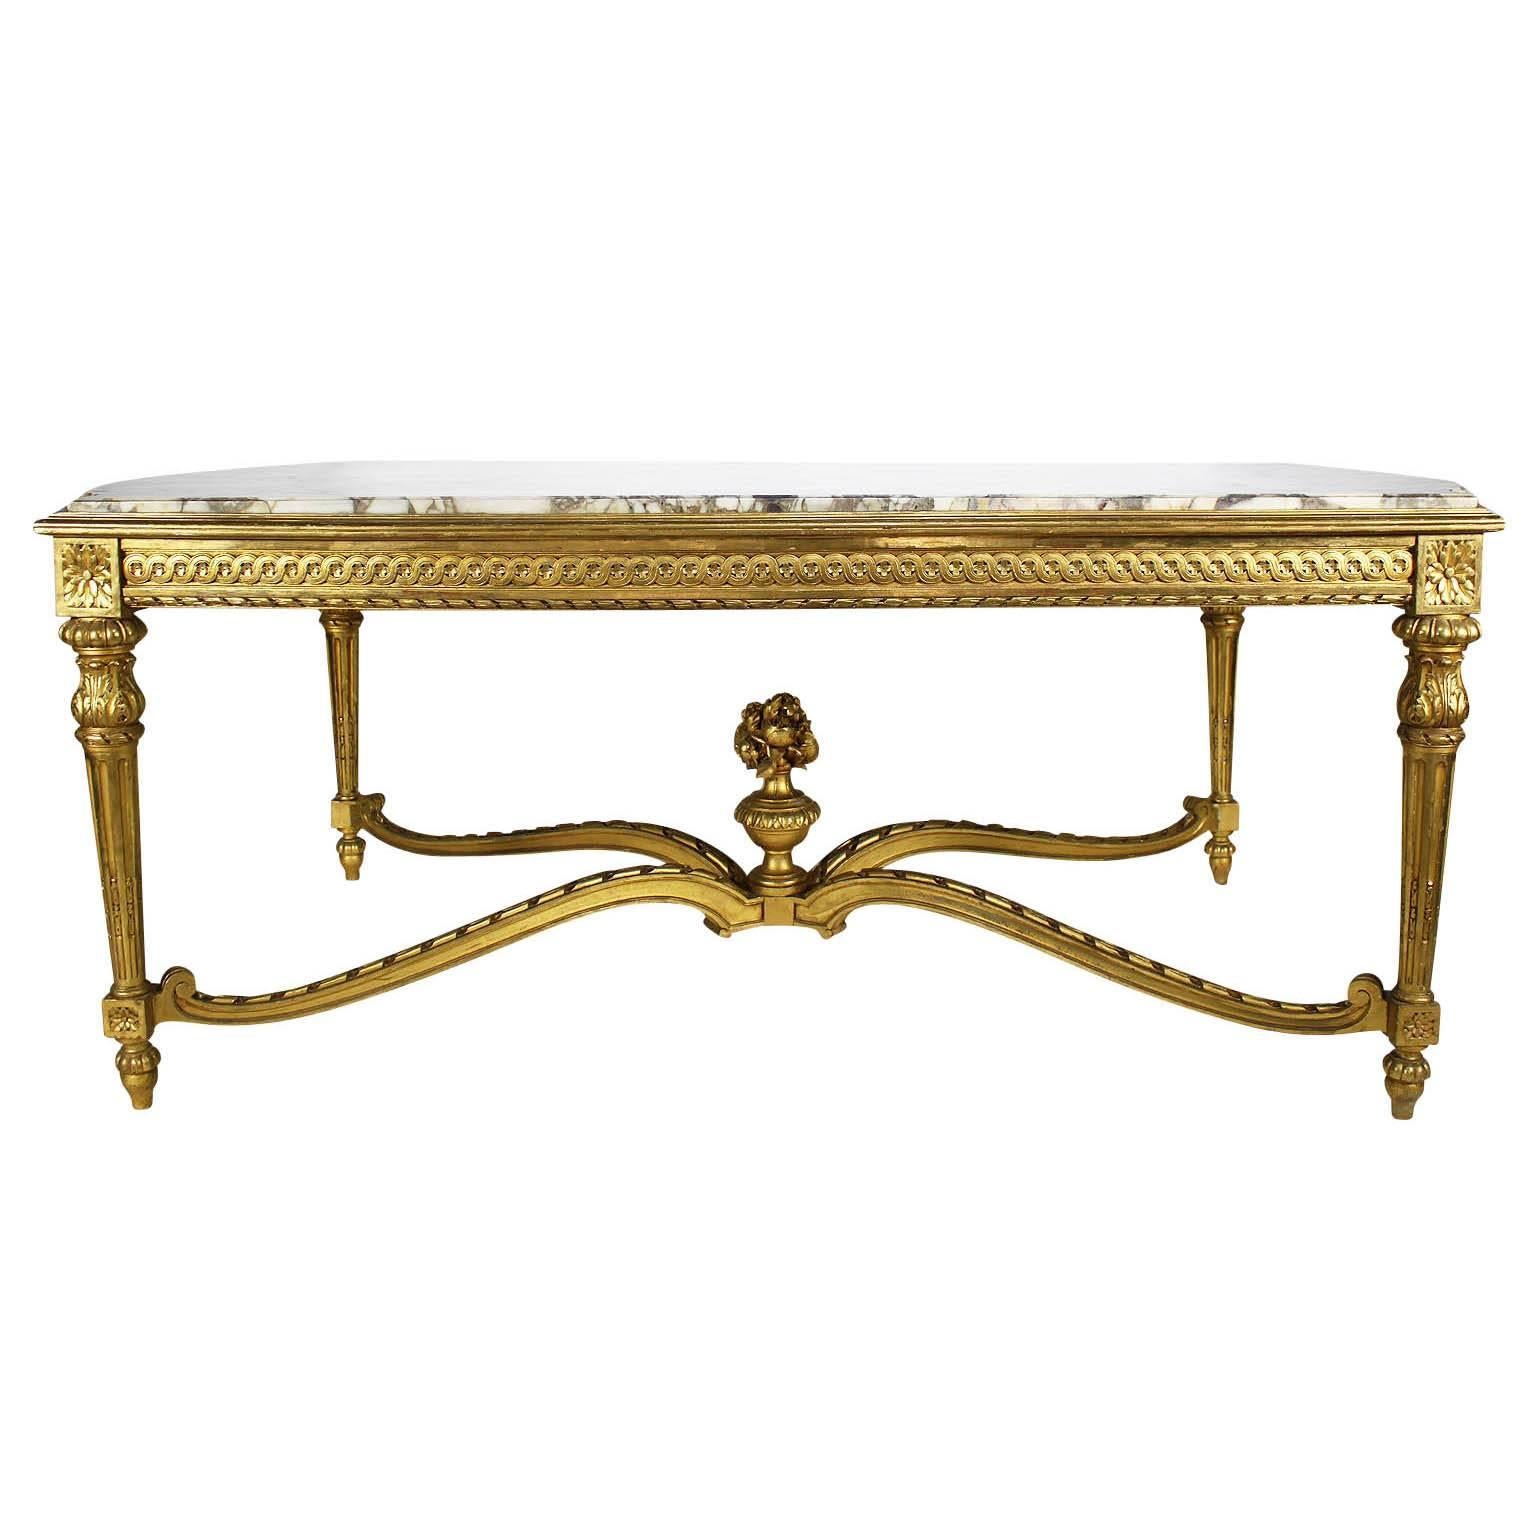 Grande table d'entrée française du 19ème siècle de style Louis XVI en bois doré sculpté